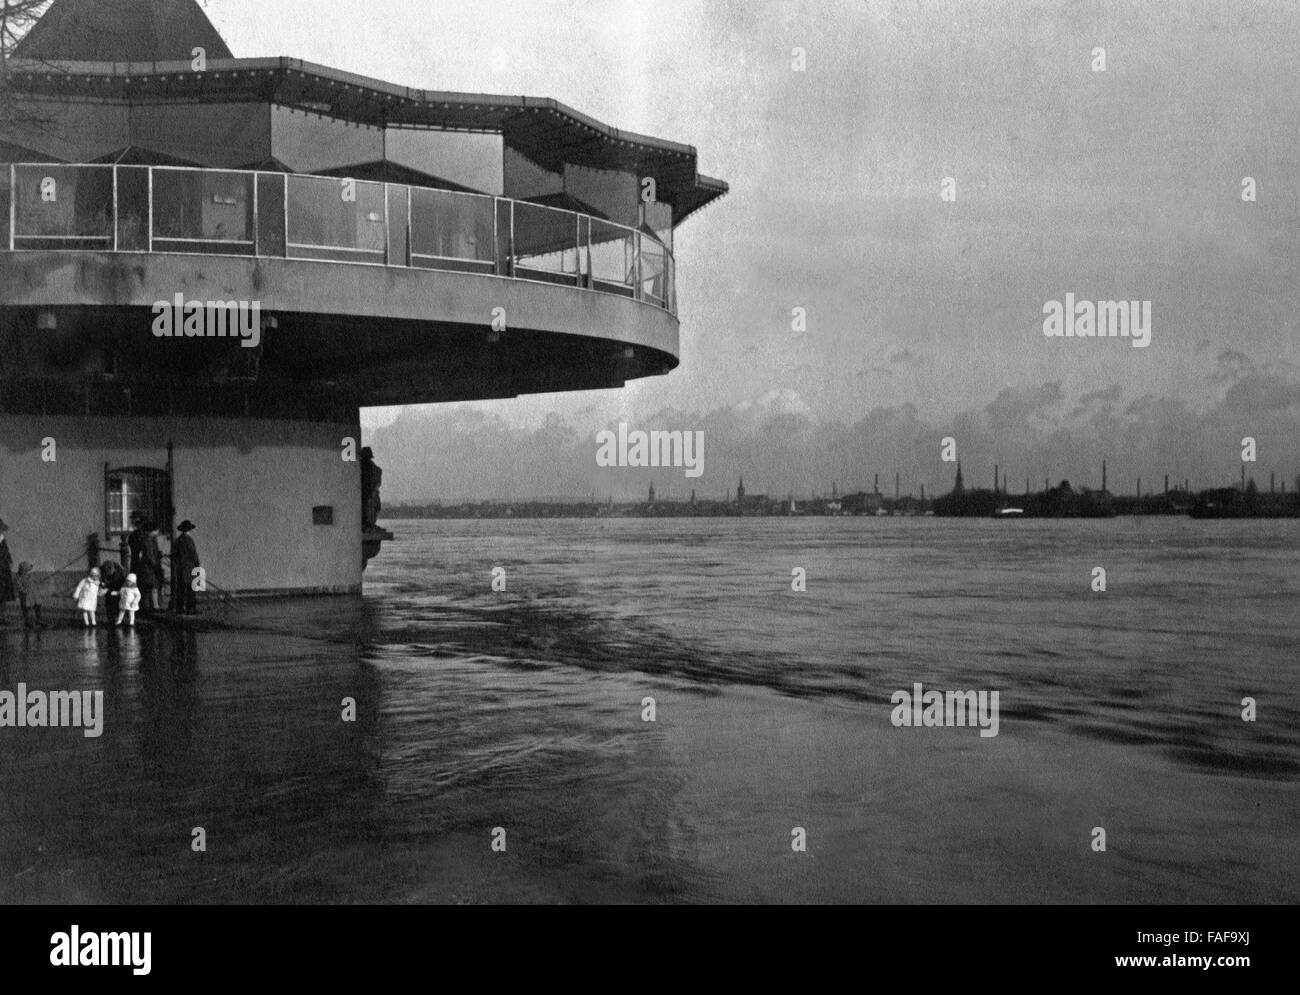 Sterben Sie Bastei in Köln Studienabschnitte des Hochwassers Im Januar 1926, Deutschland 1920er Jahre. Restaurant "Bastei" in Köln während des Hochwassers im Januar 1926 im Deutschland der 1920er Jahre. Stockfoto